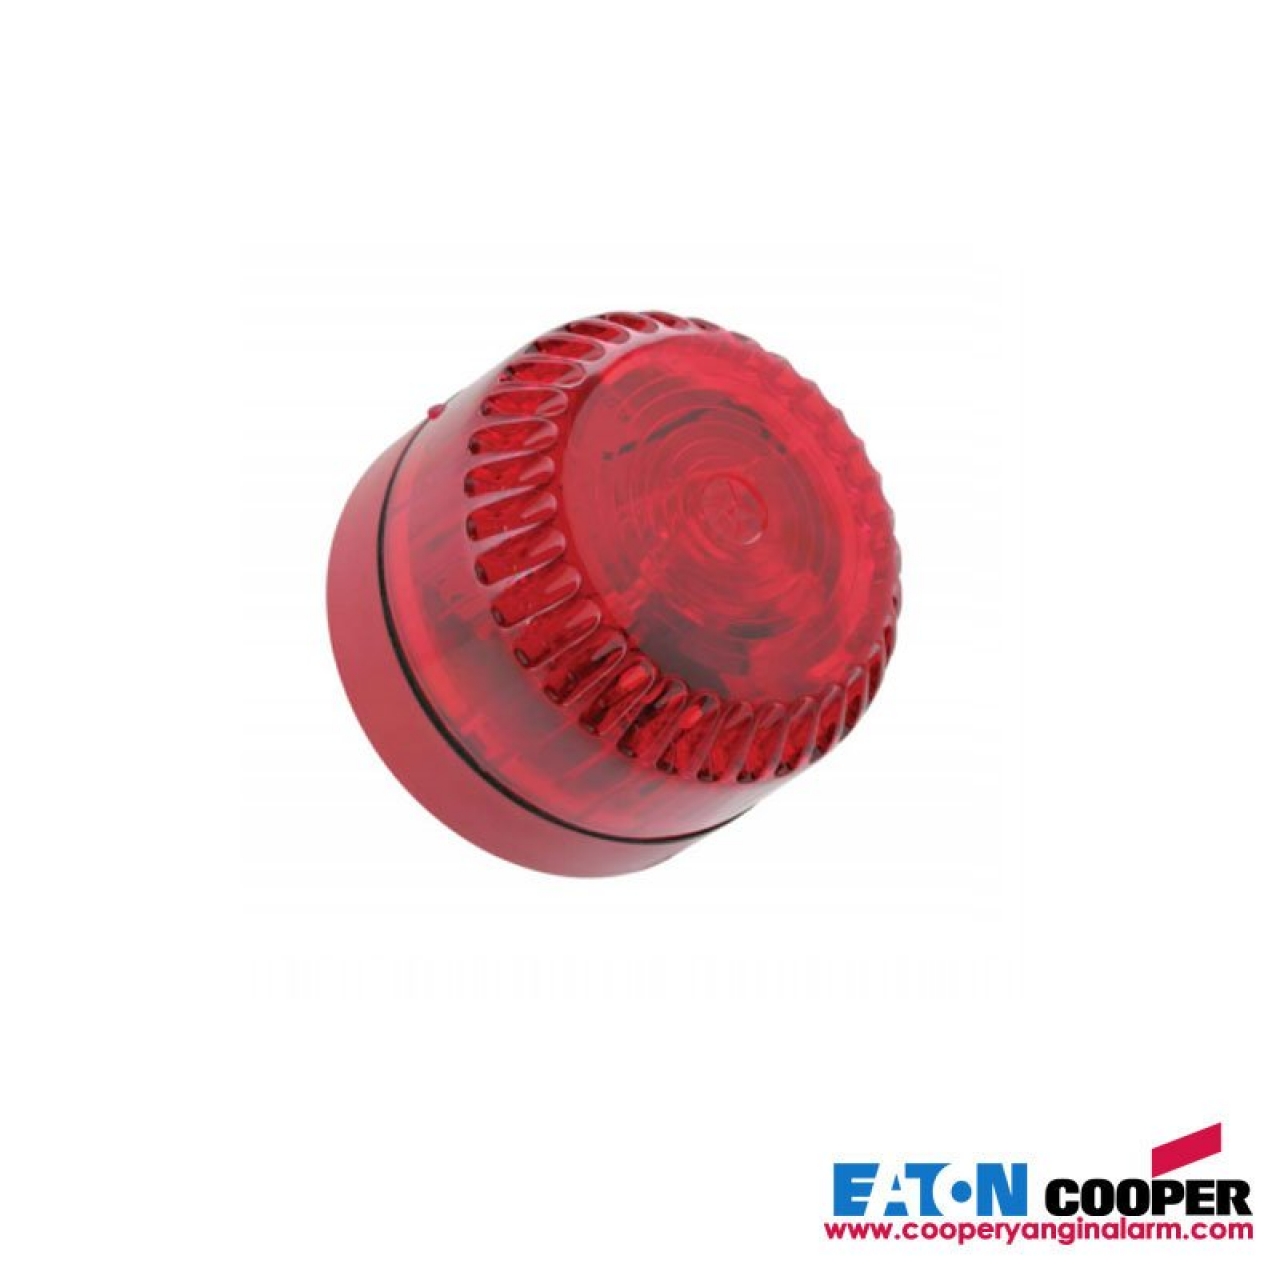 COOPER Konvansiyonel Xenon Flaşör 3Cd, Kırmızı